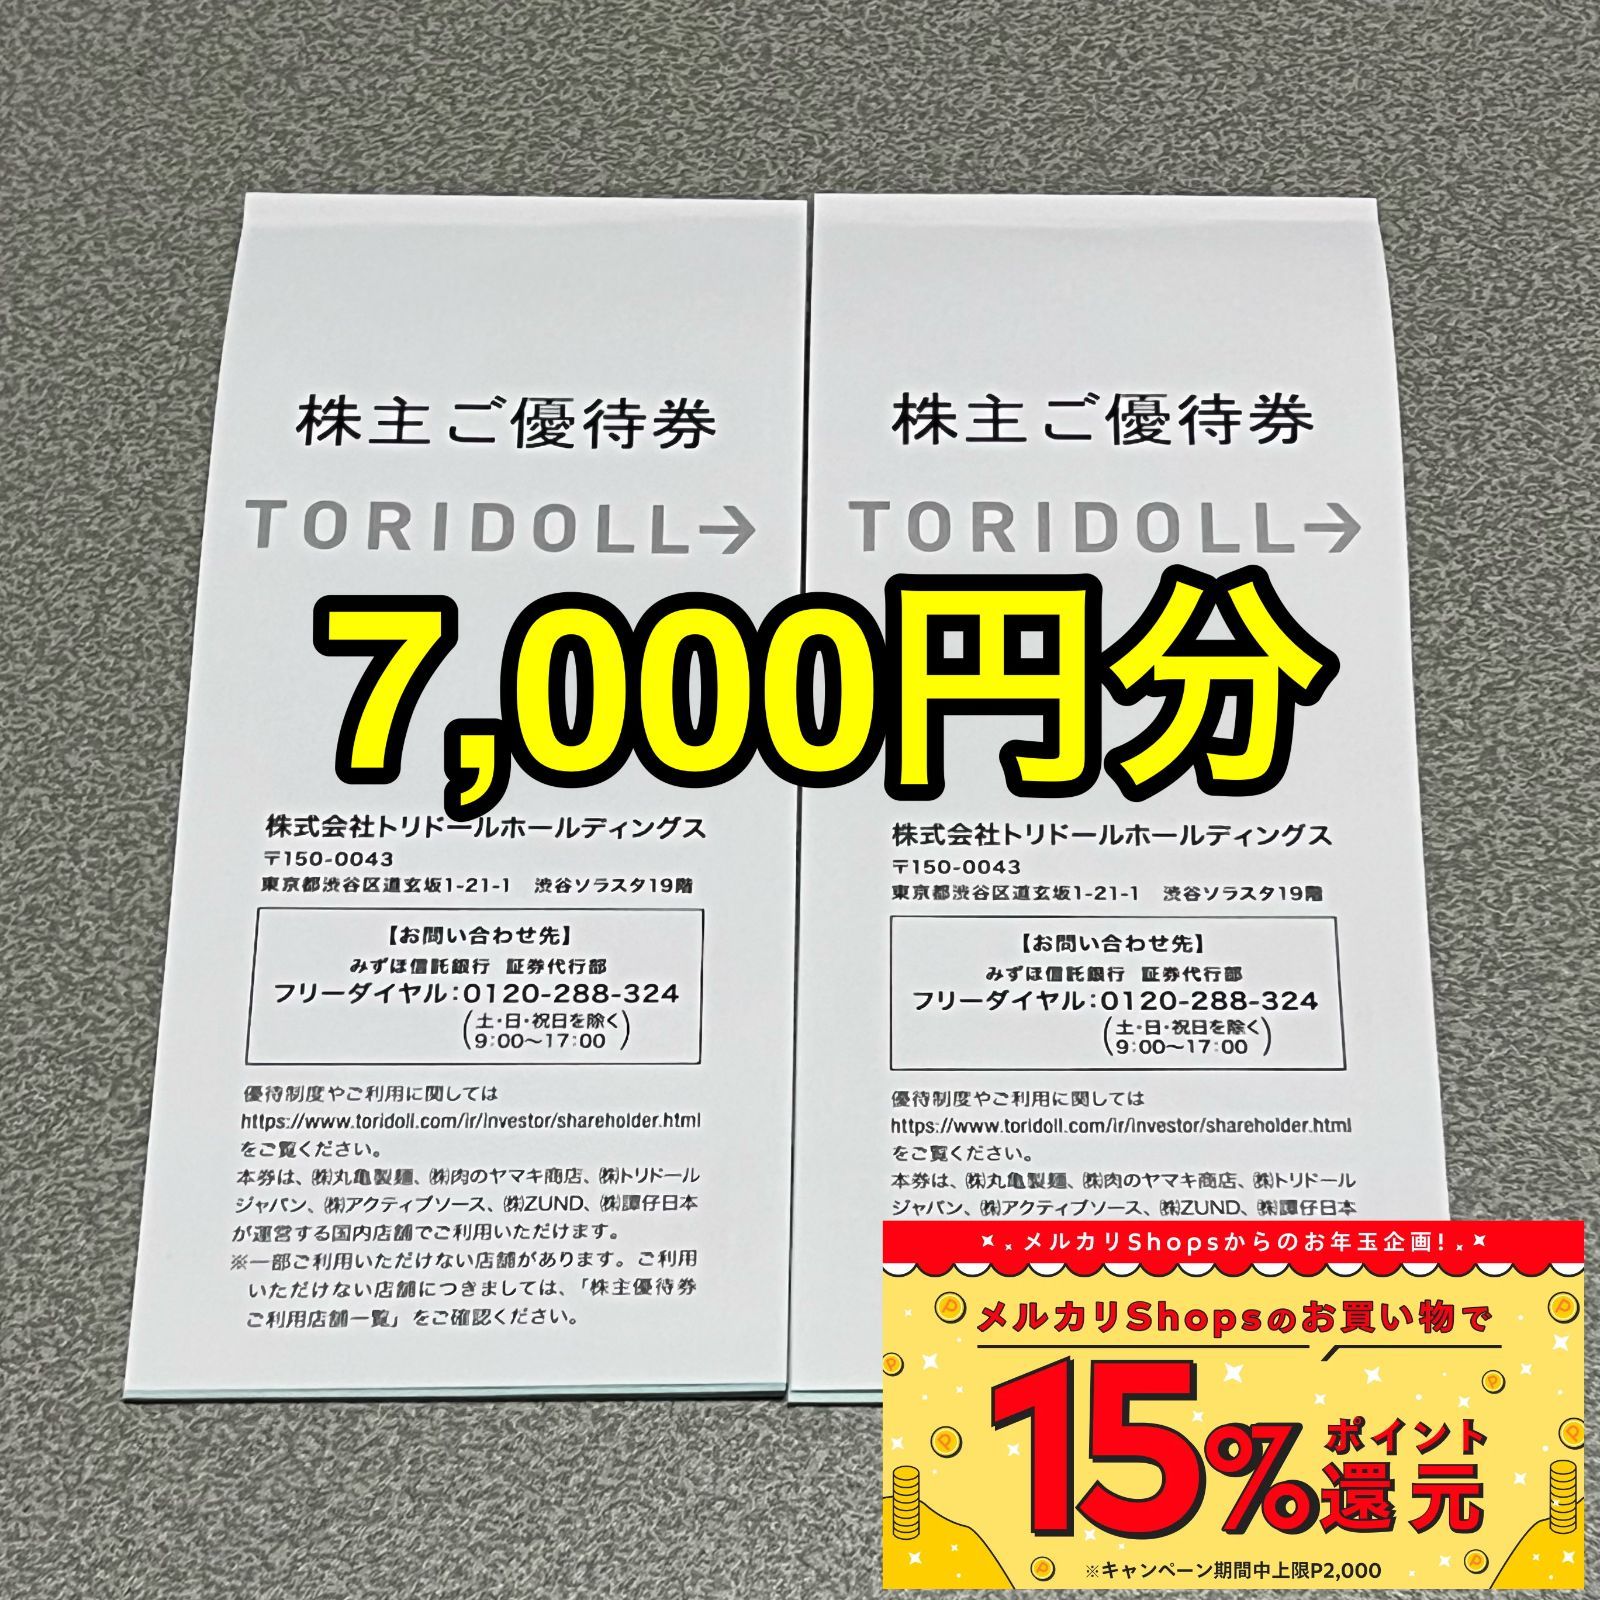 レストラン/食事券最新 トリドール 優待 7000円分